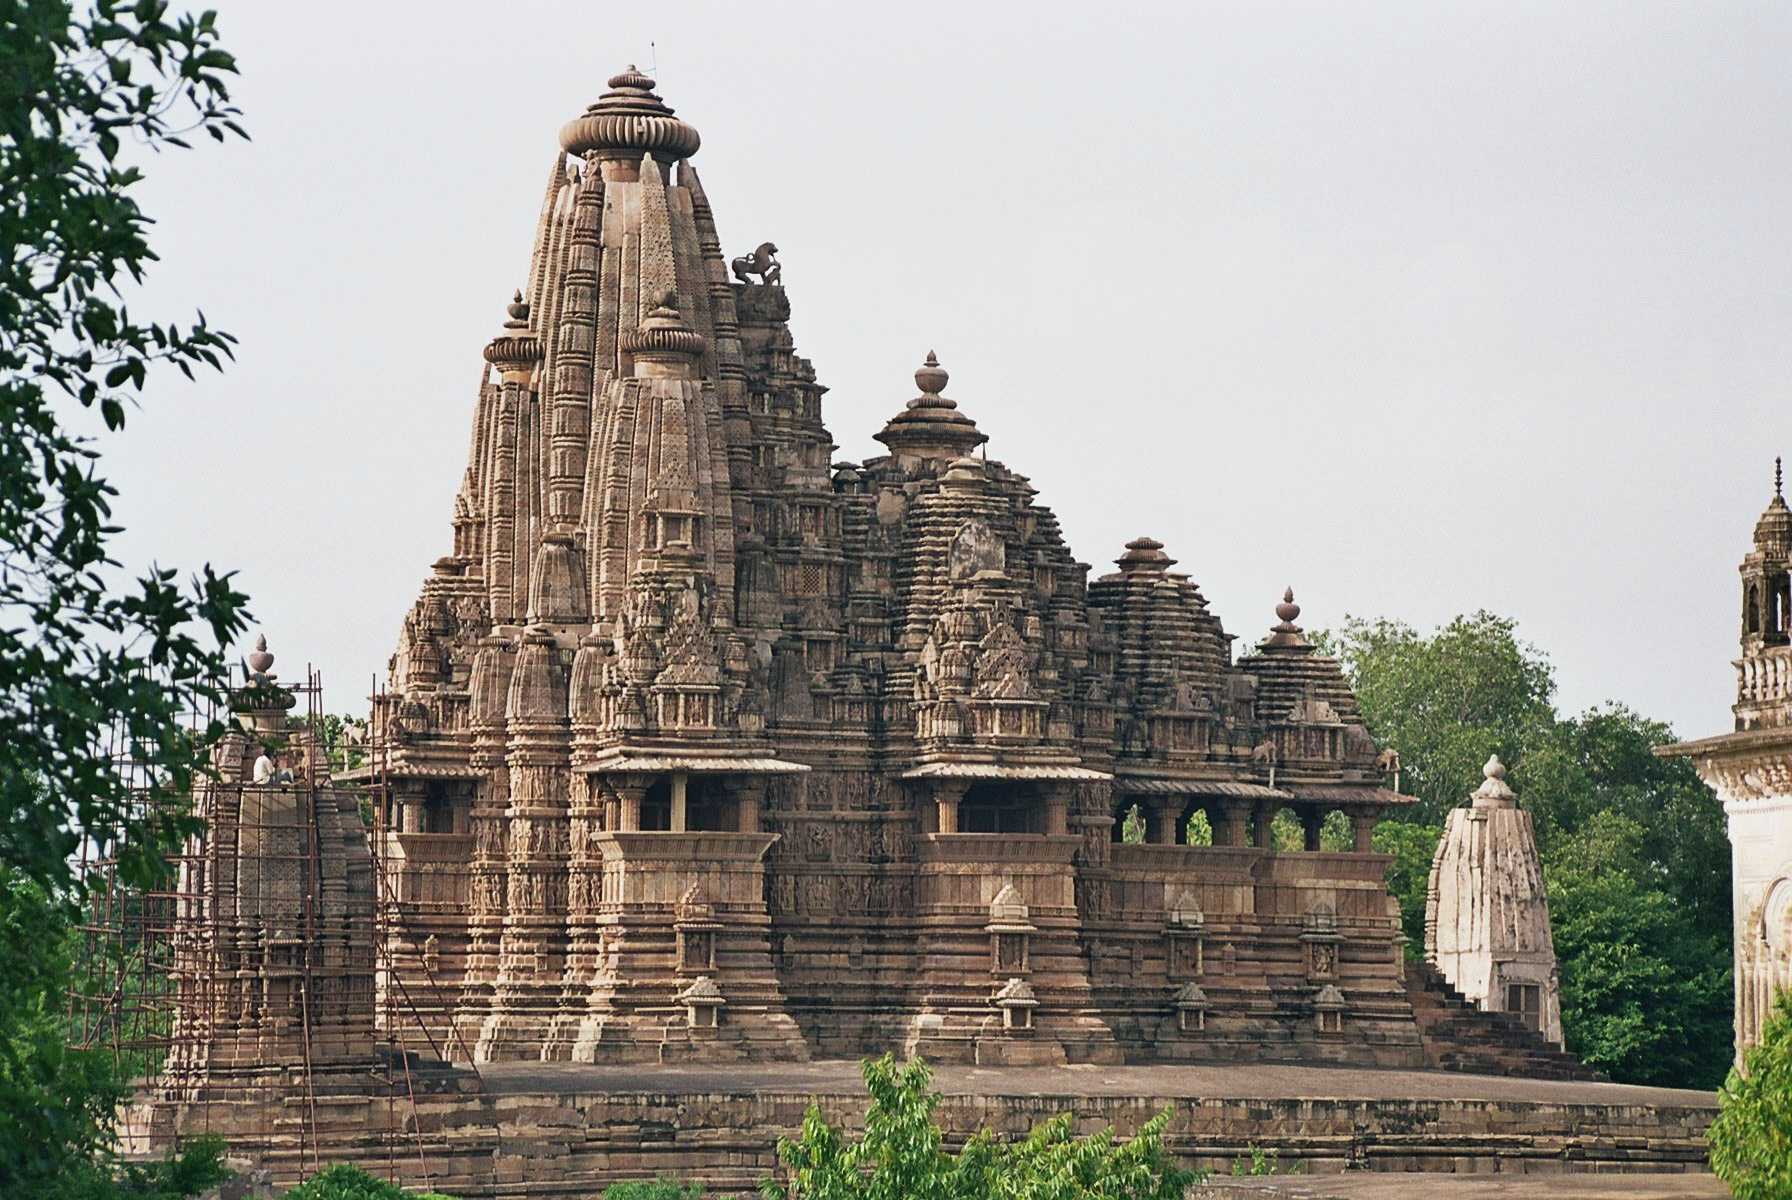 the vishvanatha temple